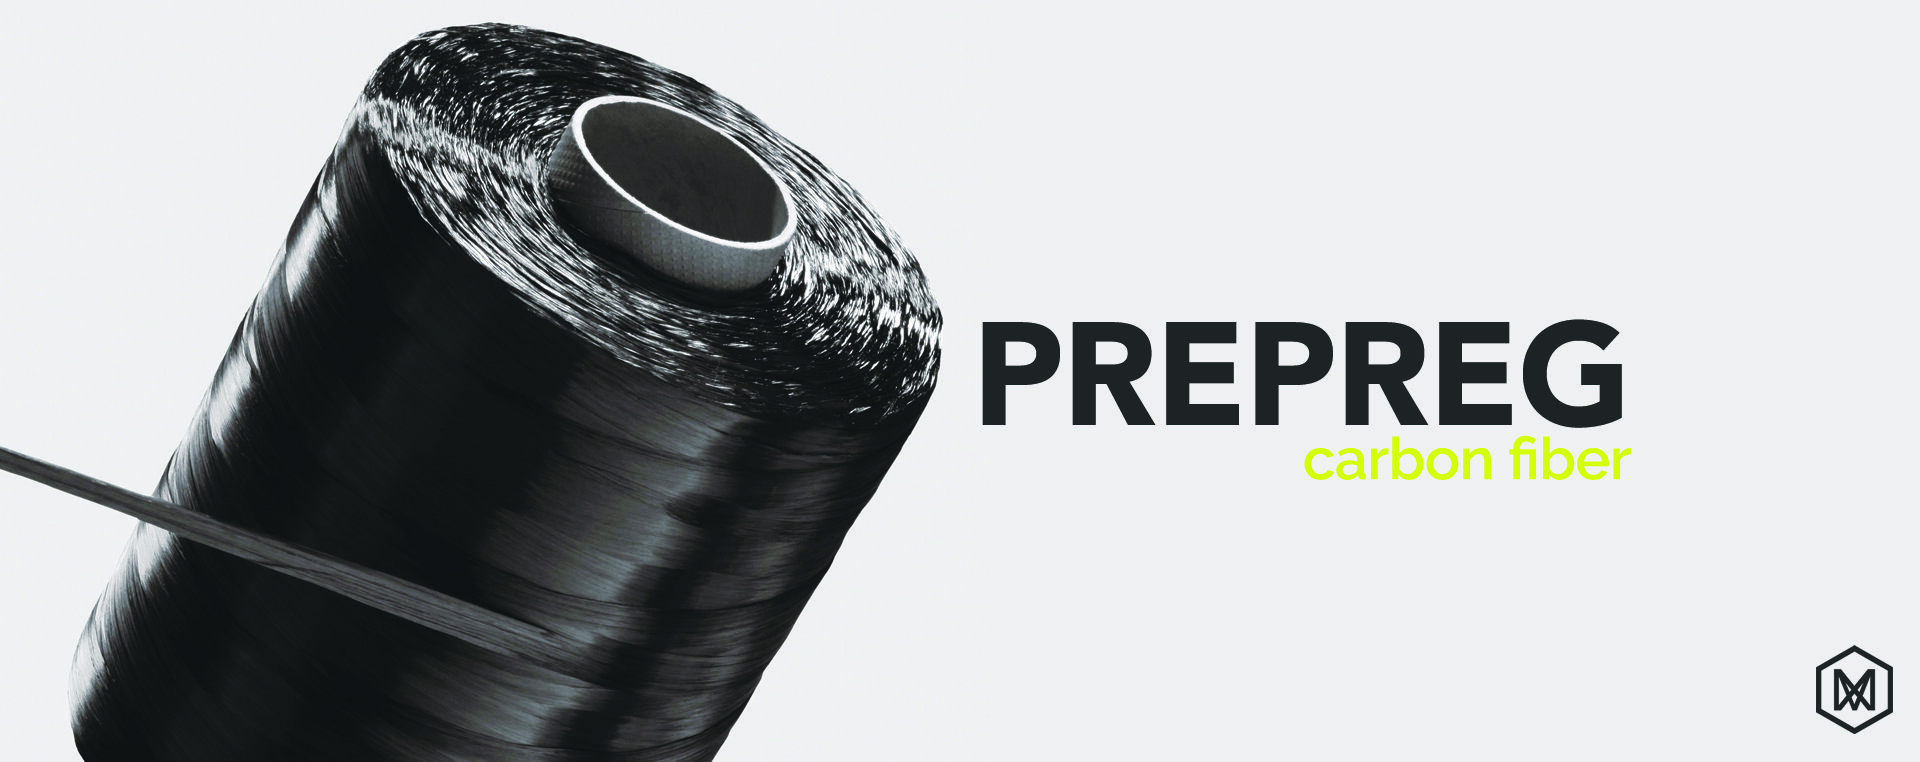 Carbon fiber prepreg - SIGRAPREG® - SGL Carbon Technic S.A.S. - fiberglass  / aramid fiber / epoxy resin